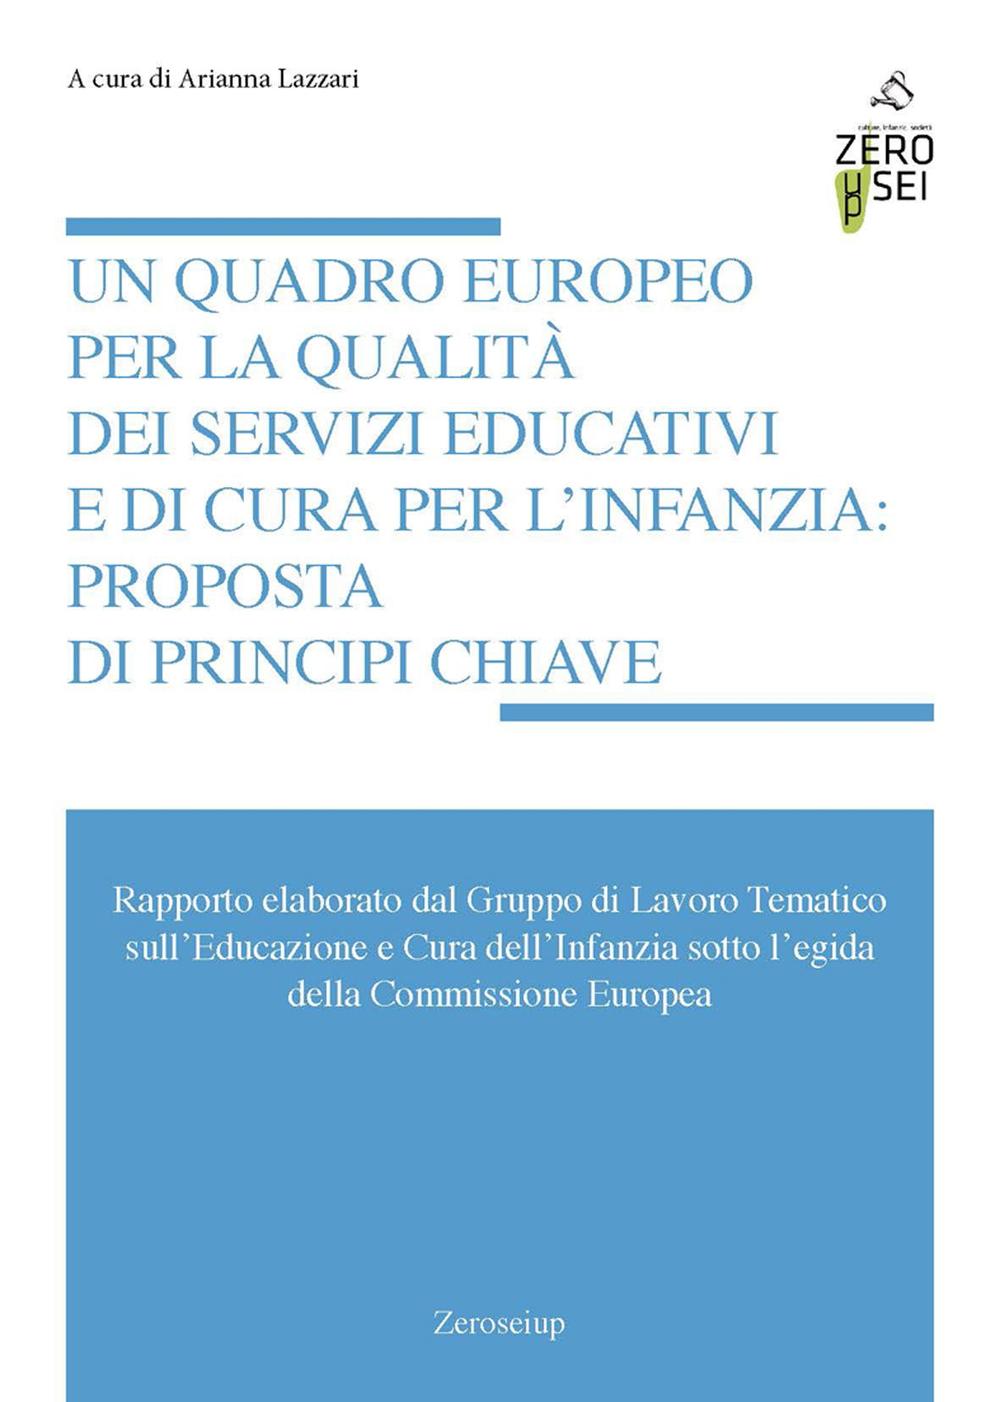 Un quadro europeo per la qualità dei servizi educativi e di cura per l'infanzia: proposta di principi chiave